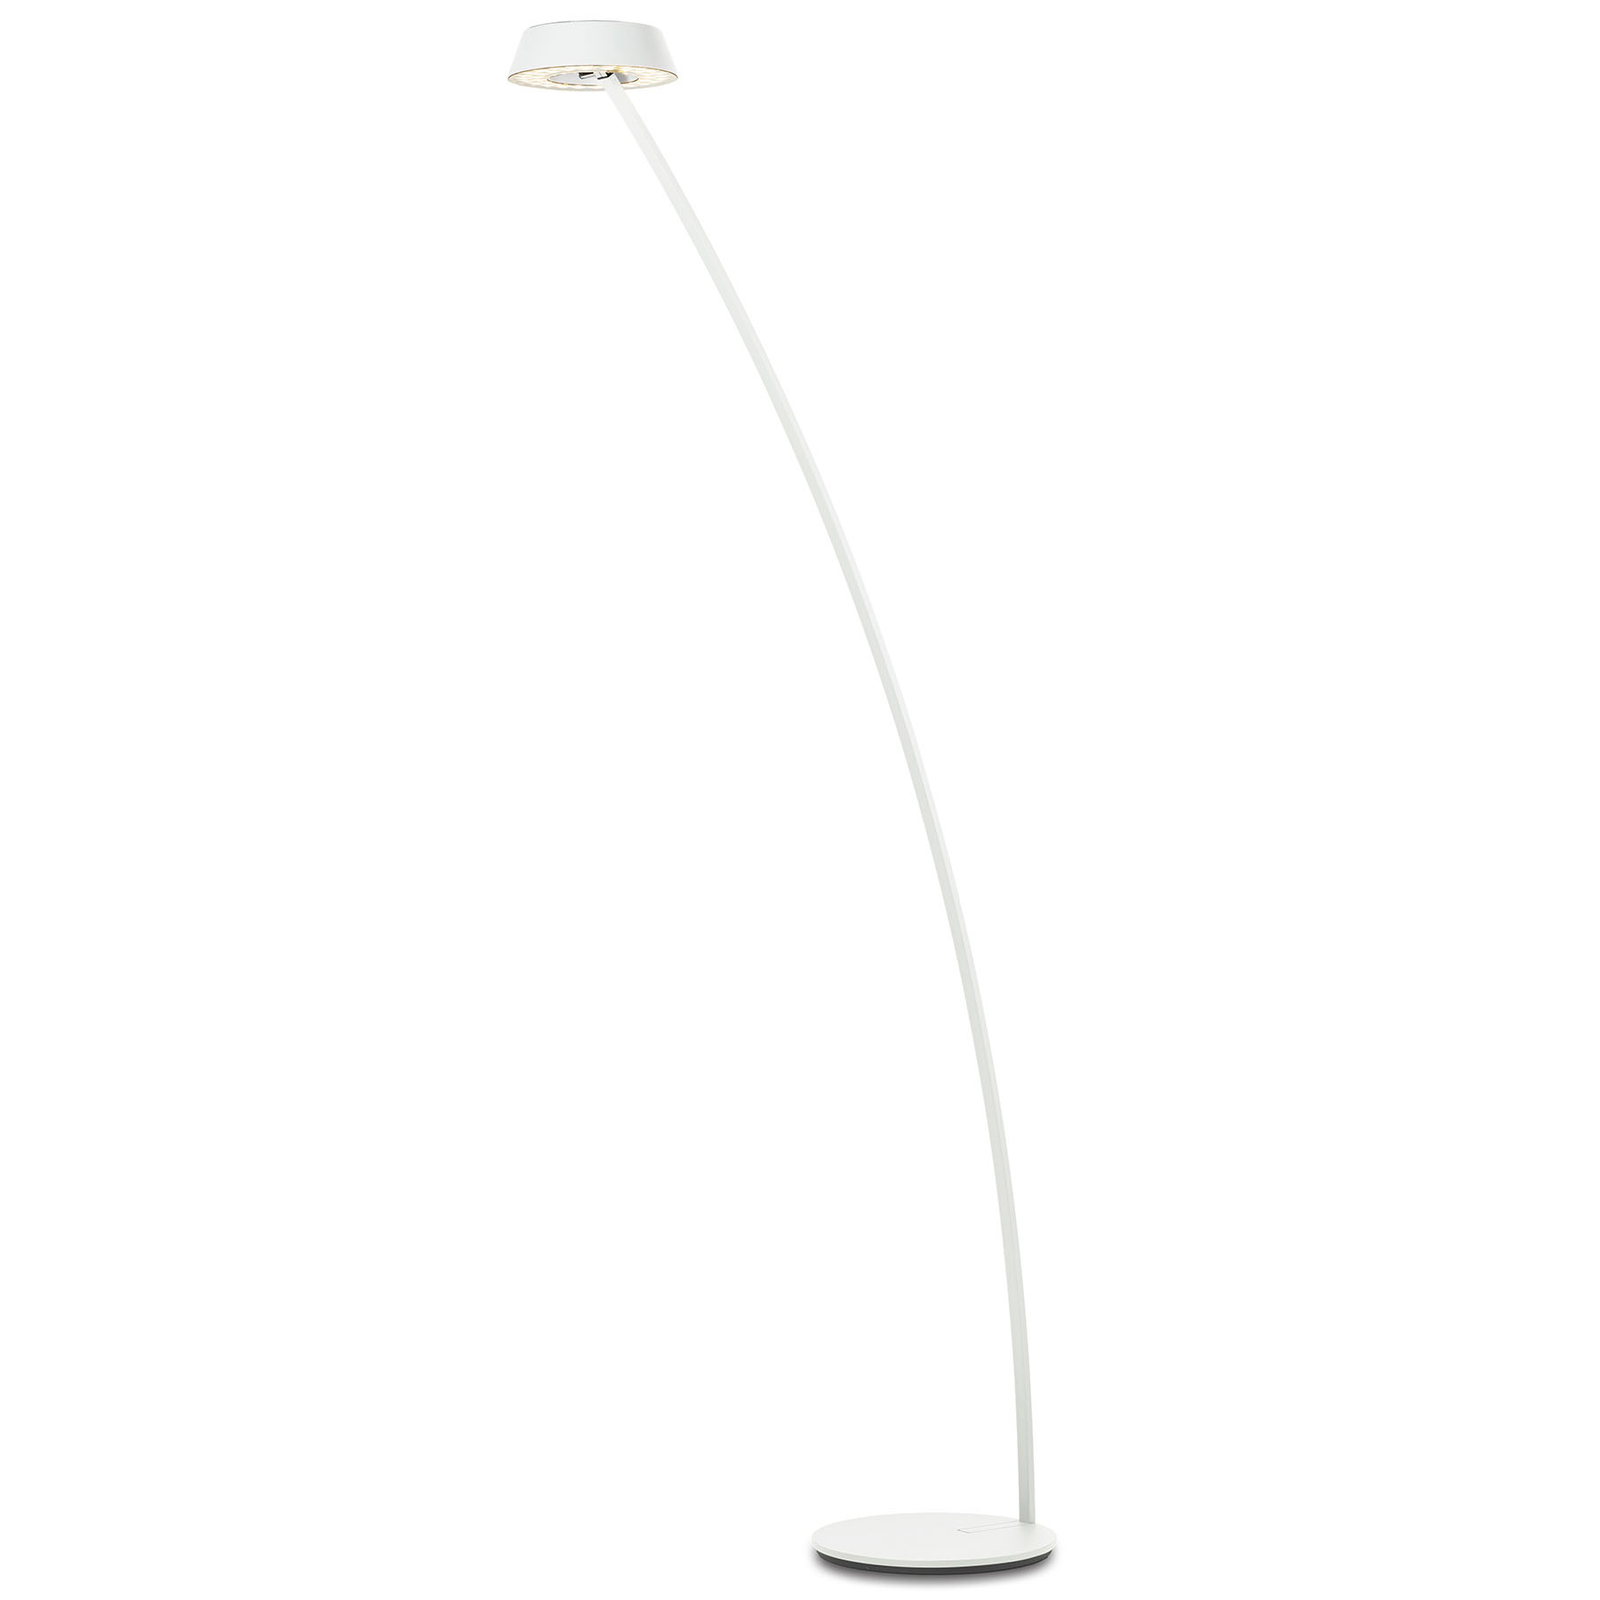 OLIGO Glance lampa stojąca wygięta biała matowa